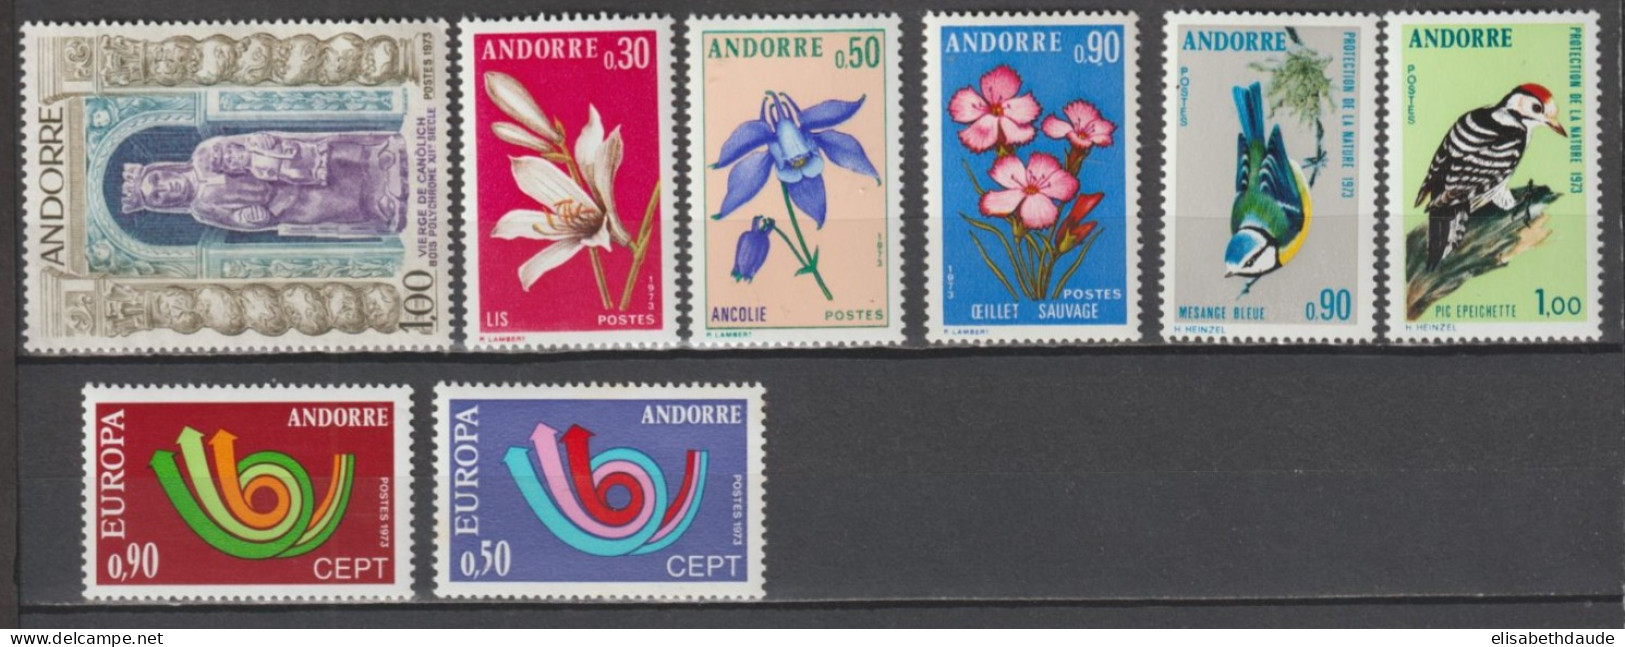 ANDORRE - ANNEE COMPLETE 1973 YVERT N° 226/233 ** MNH - COTE = 51.55 EUR. - - Volledige Jaargang